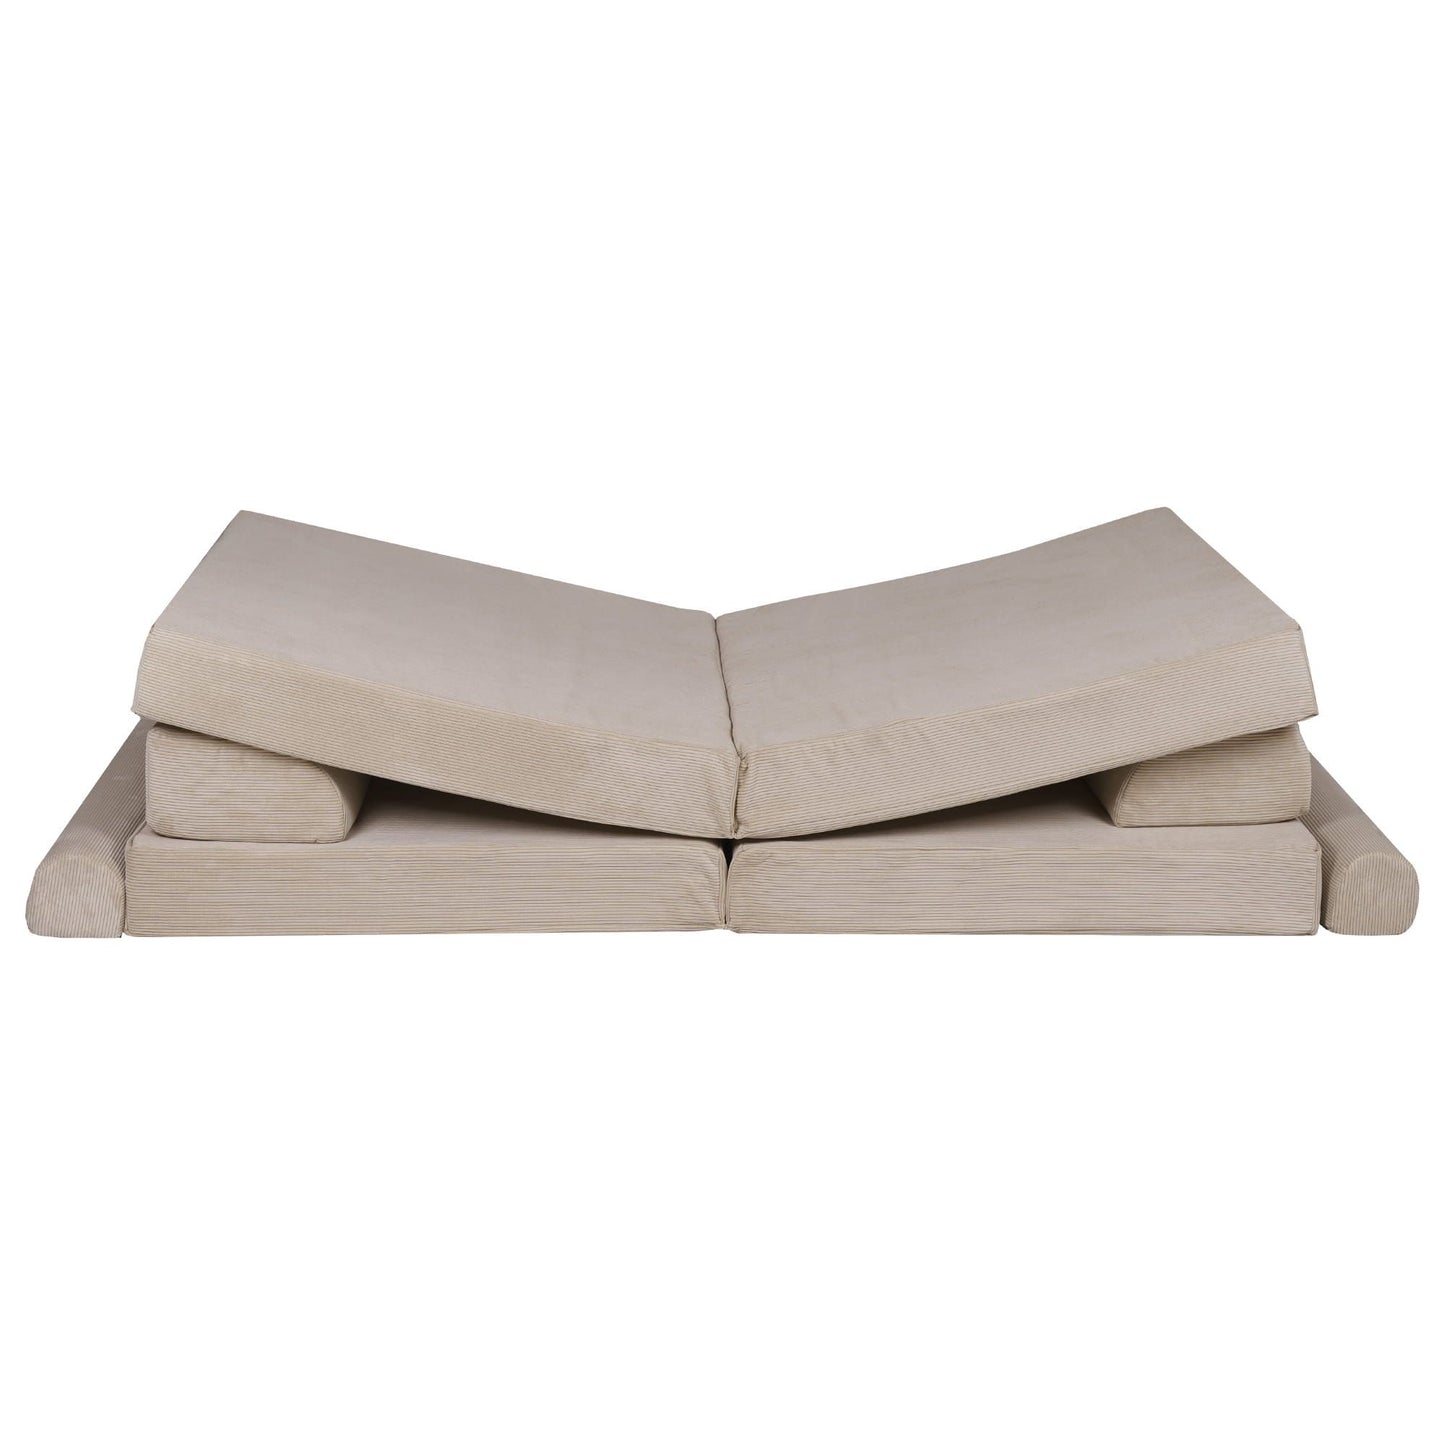 MeowBaby Kids Soft Play Sofa & Fold Out Bed - Corduroy Ecru v shape